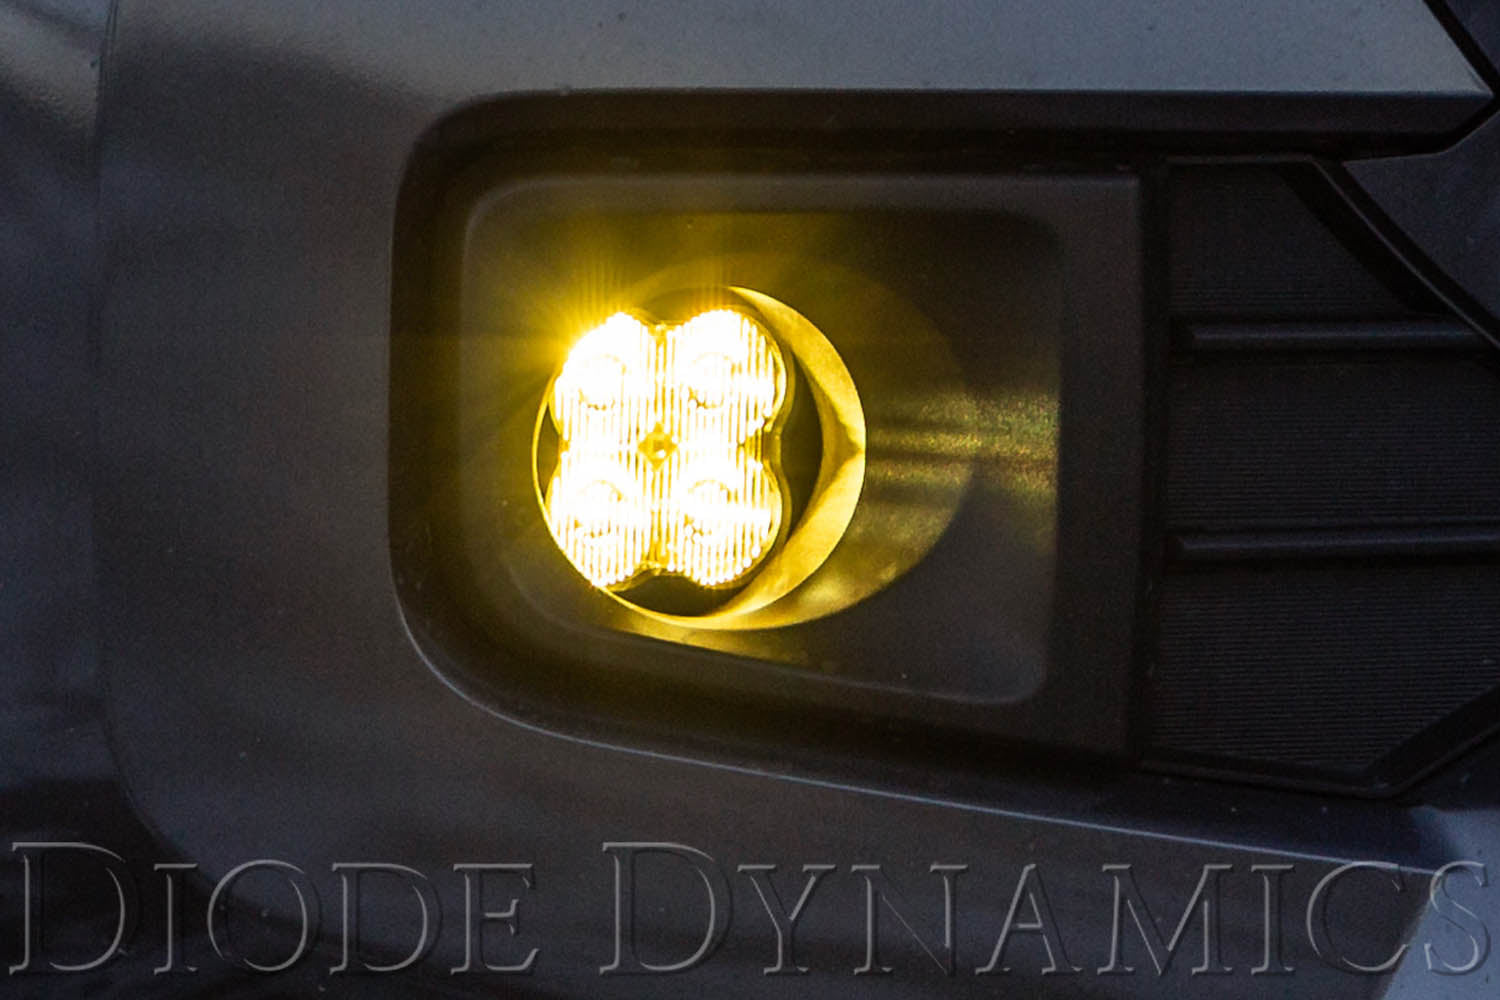 SS3 LED Fog Light Kit for 2010-2012 Lexus HS250h White SAE Fog Pro Diode Dynamics